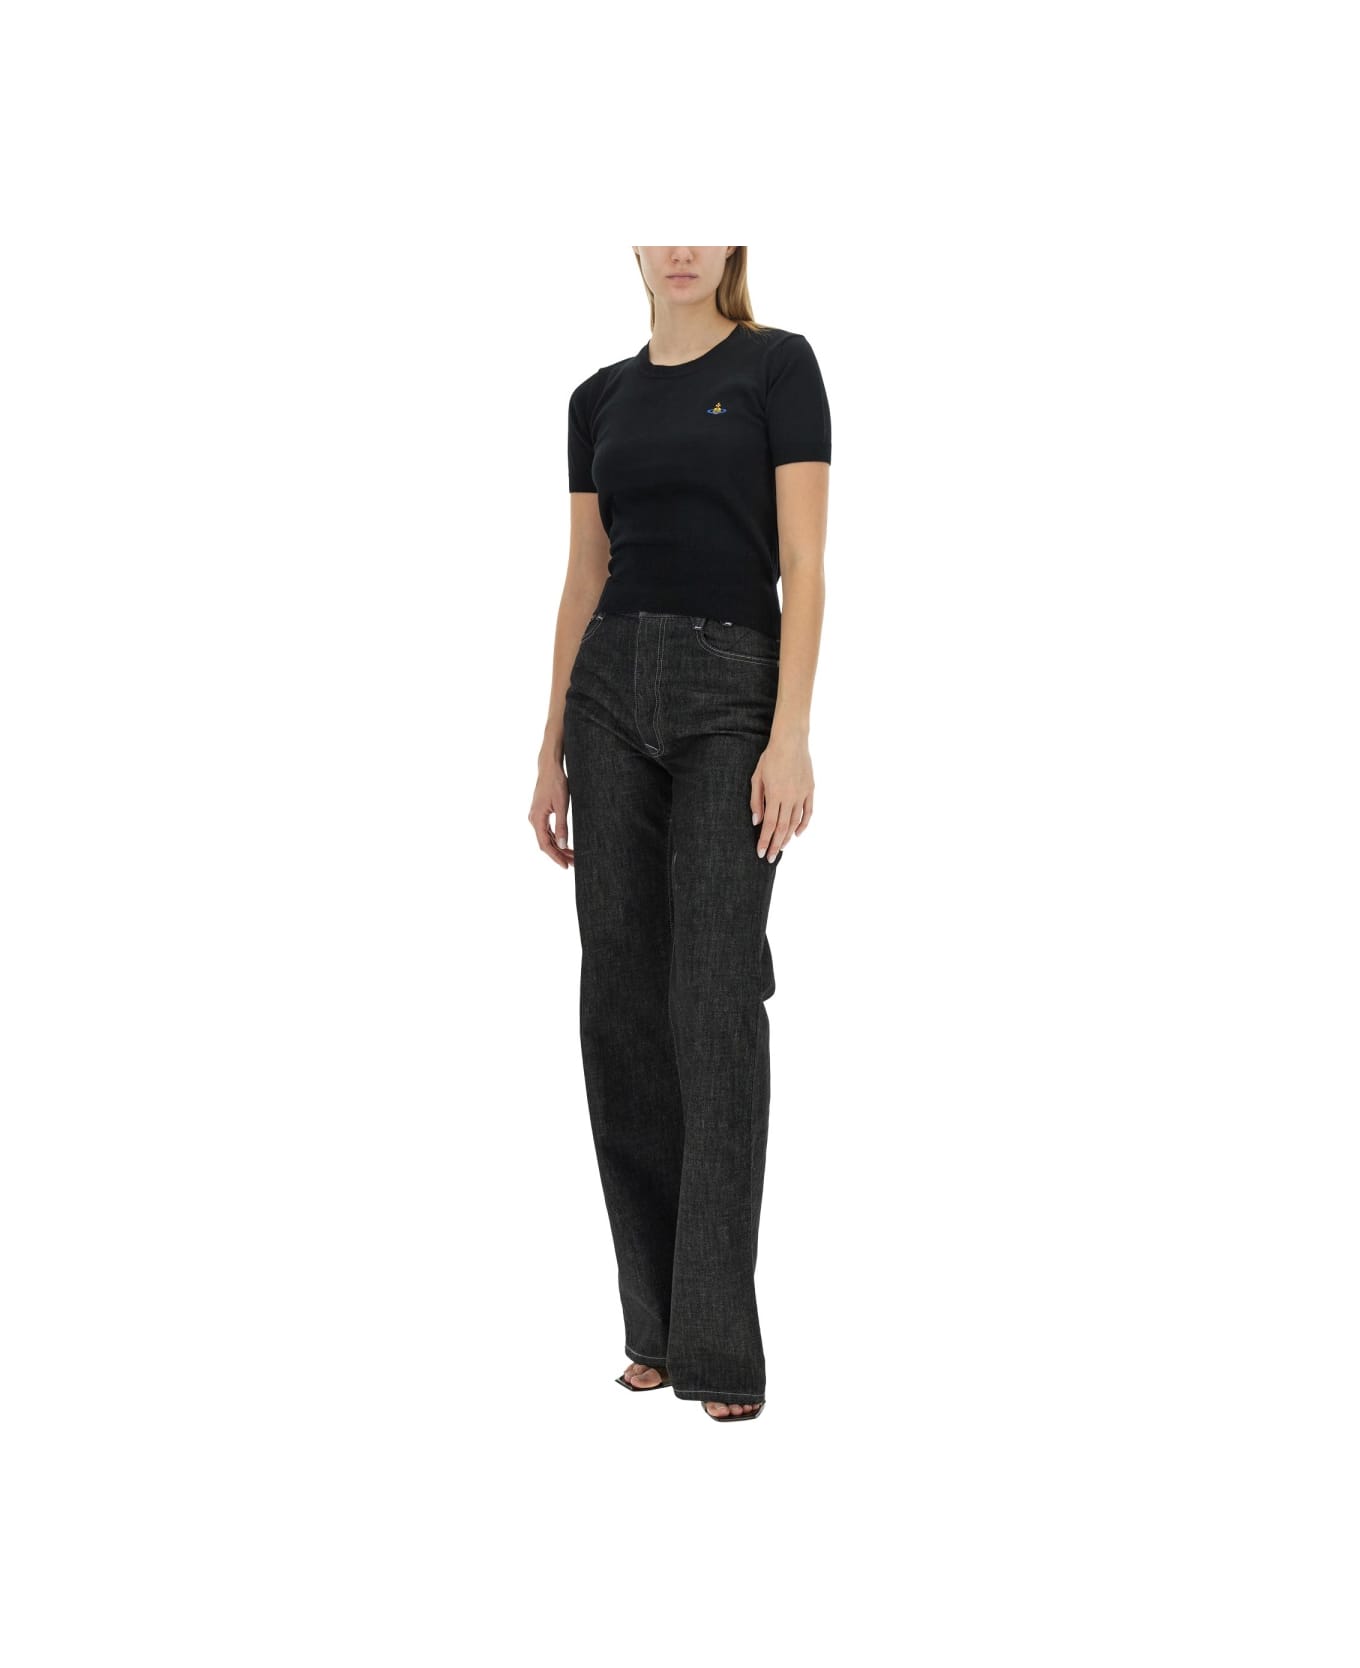 Vivienne Westwood "bea" Shirt - BLACK ニットウェア